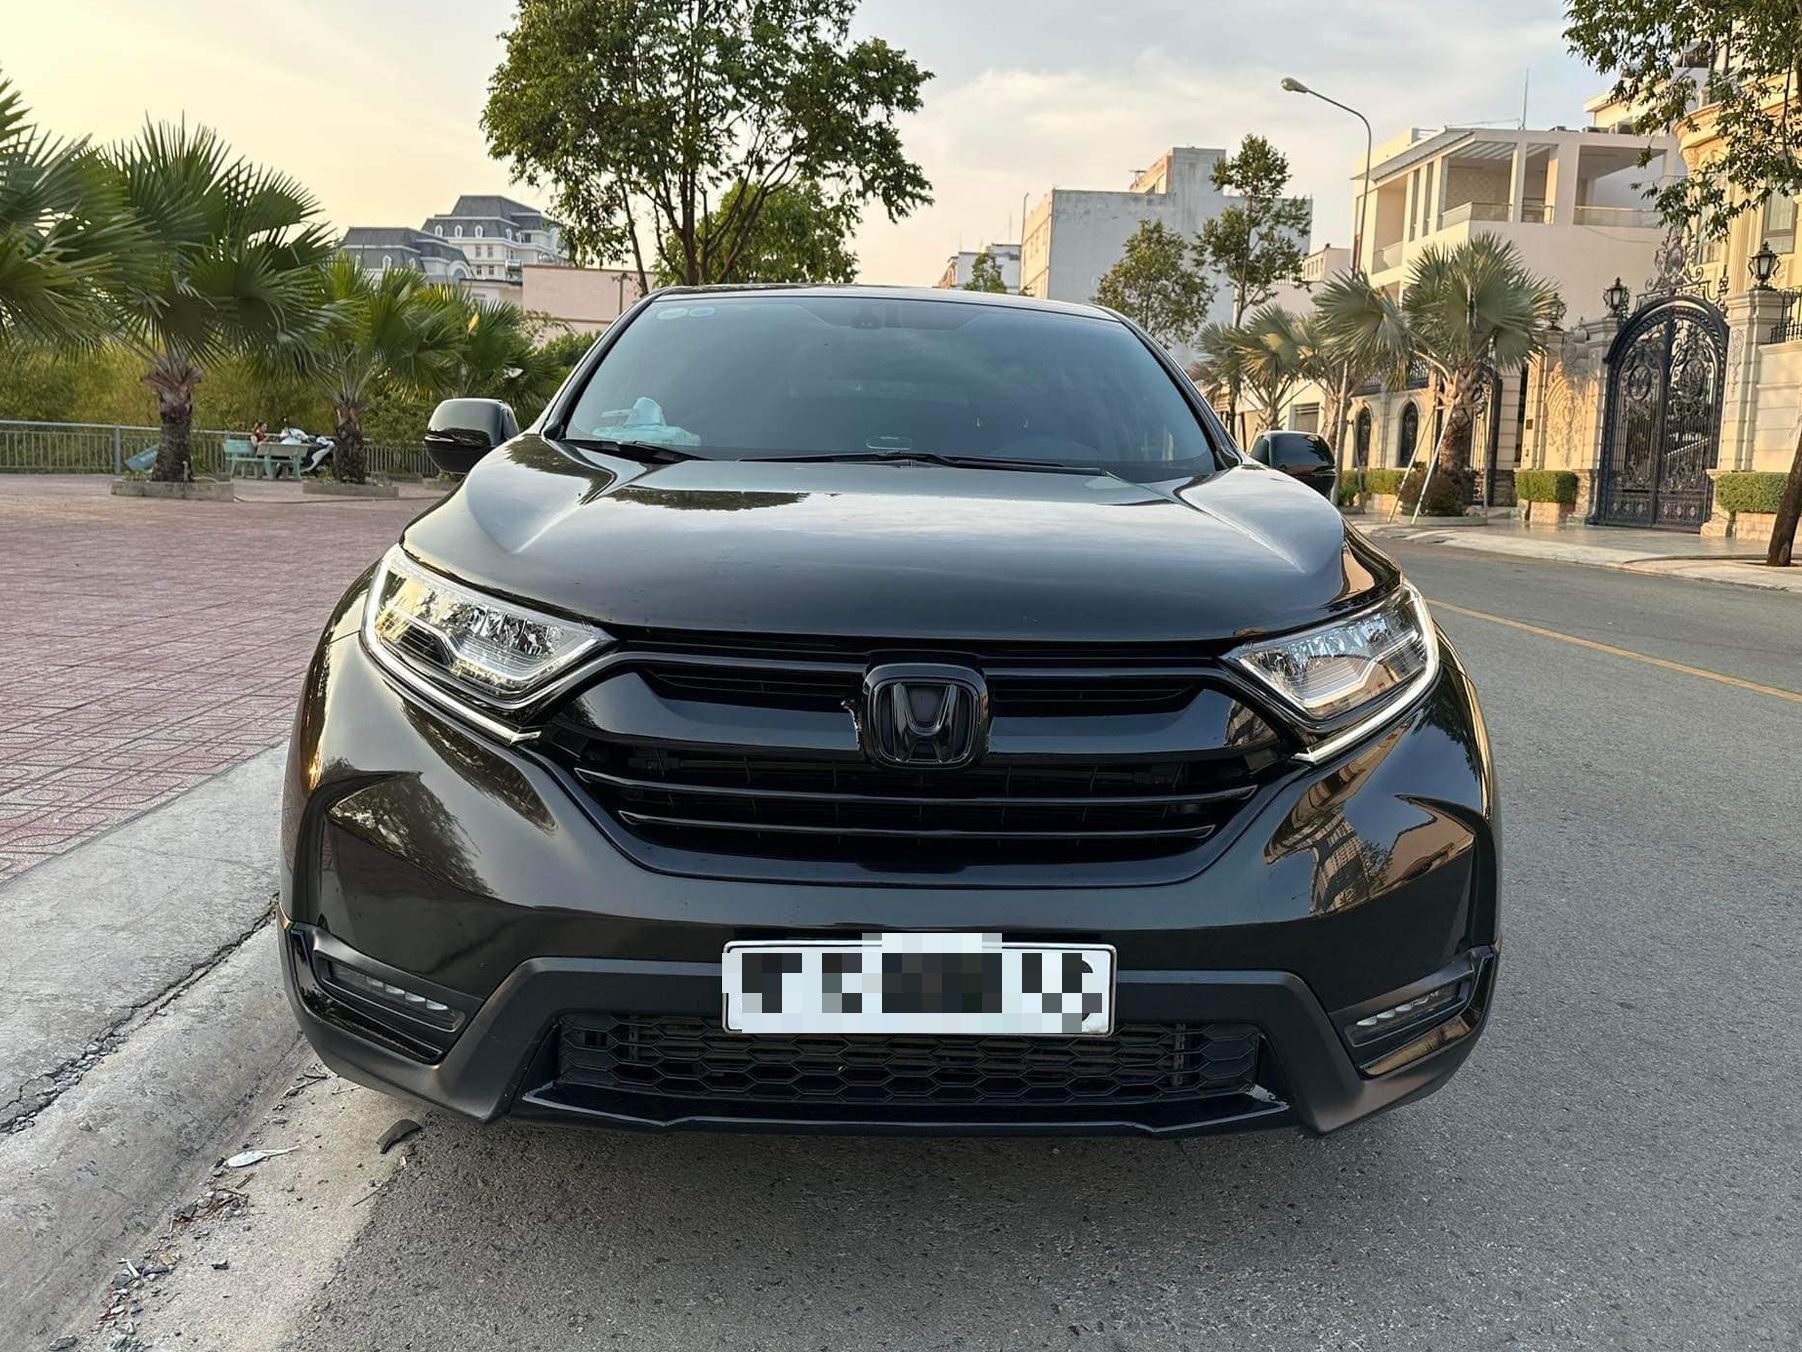 Honda CRV 2018 giá bao nhiêu Đánh giá thiết kế vận hành  ảnh chi tiết   MuasamXecom